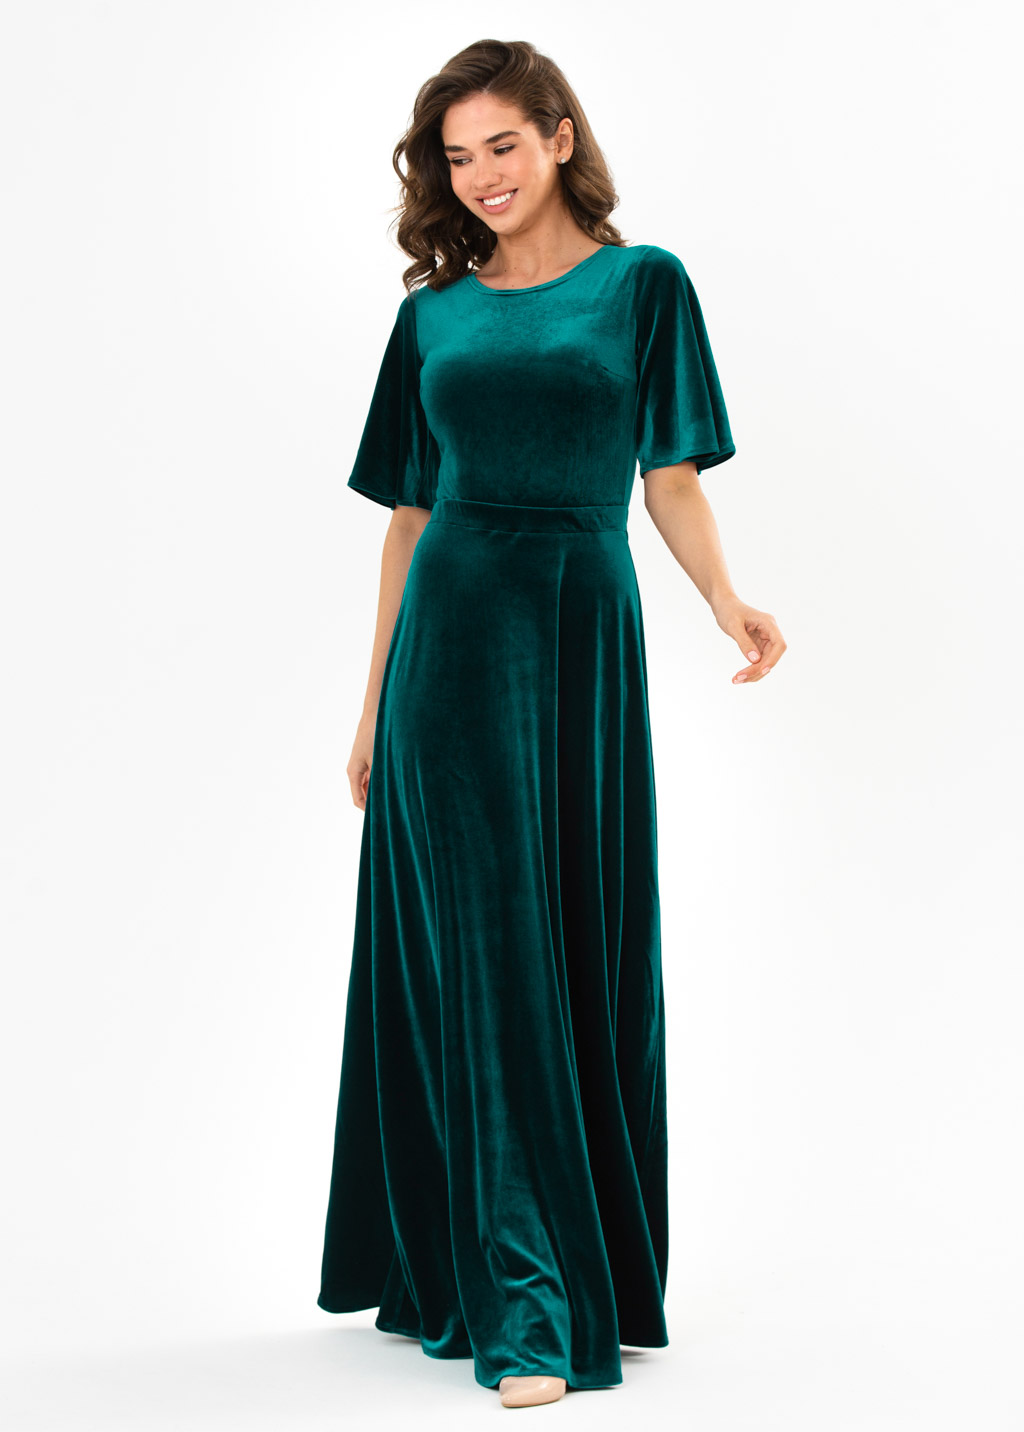 Teal green velvet long dress